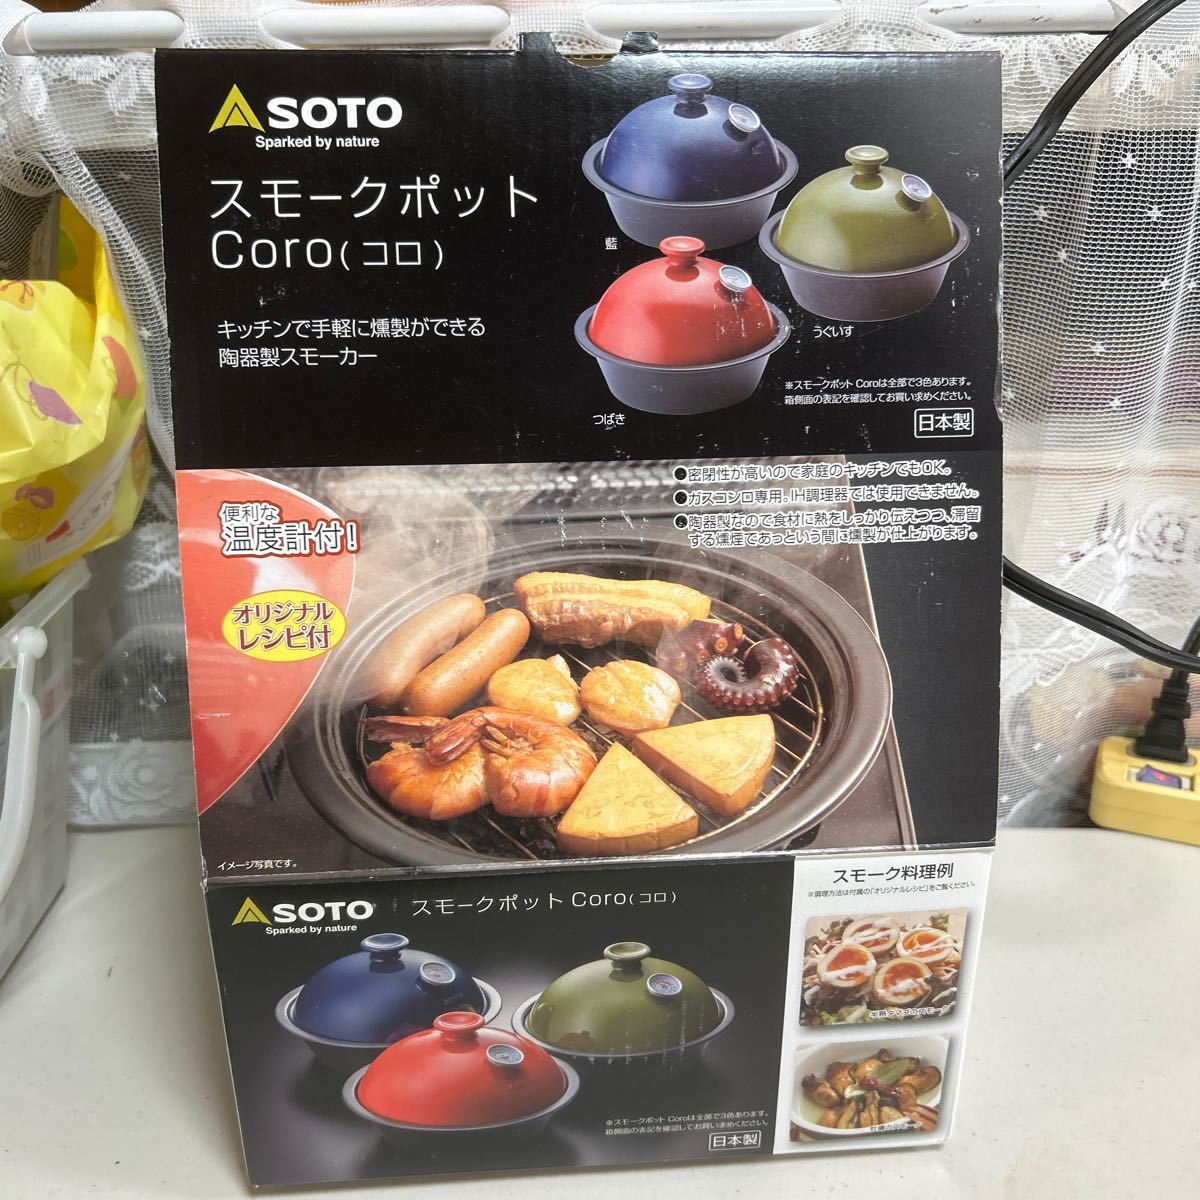  スモークポット Coro SOTO 日本製 スモーク料理調理鍋 うぐいす色 ST-126UG キッチンで手軽に燻製ができる 陶器製スモーカーの画像1